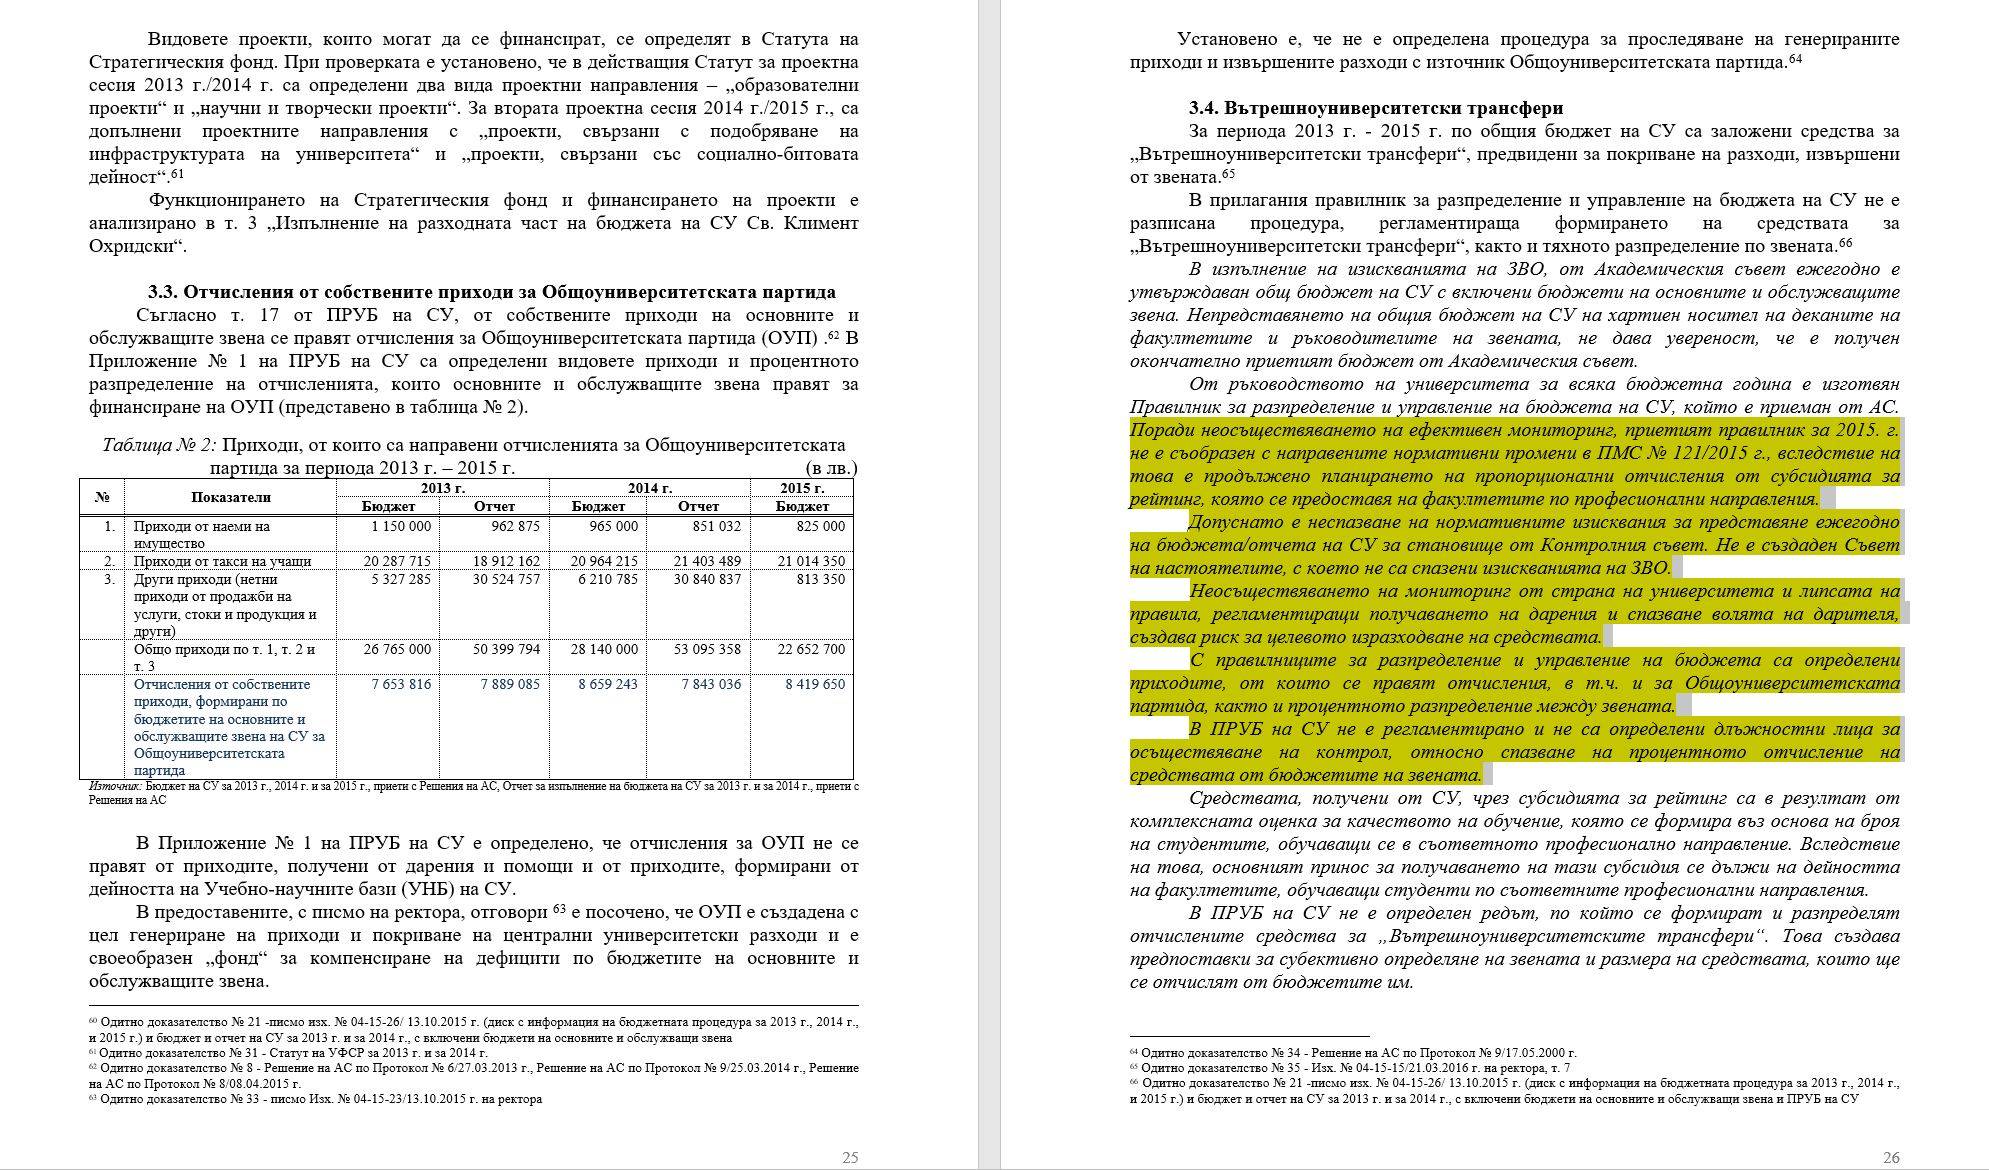 Доклад на Сметната палата, стр. 25-26